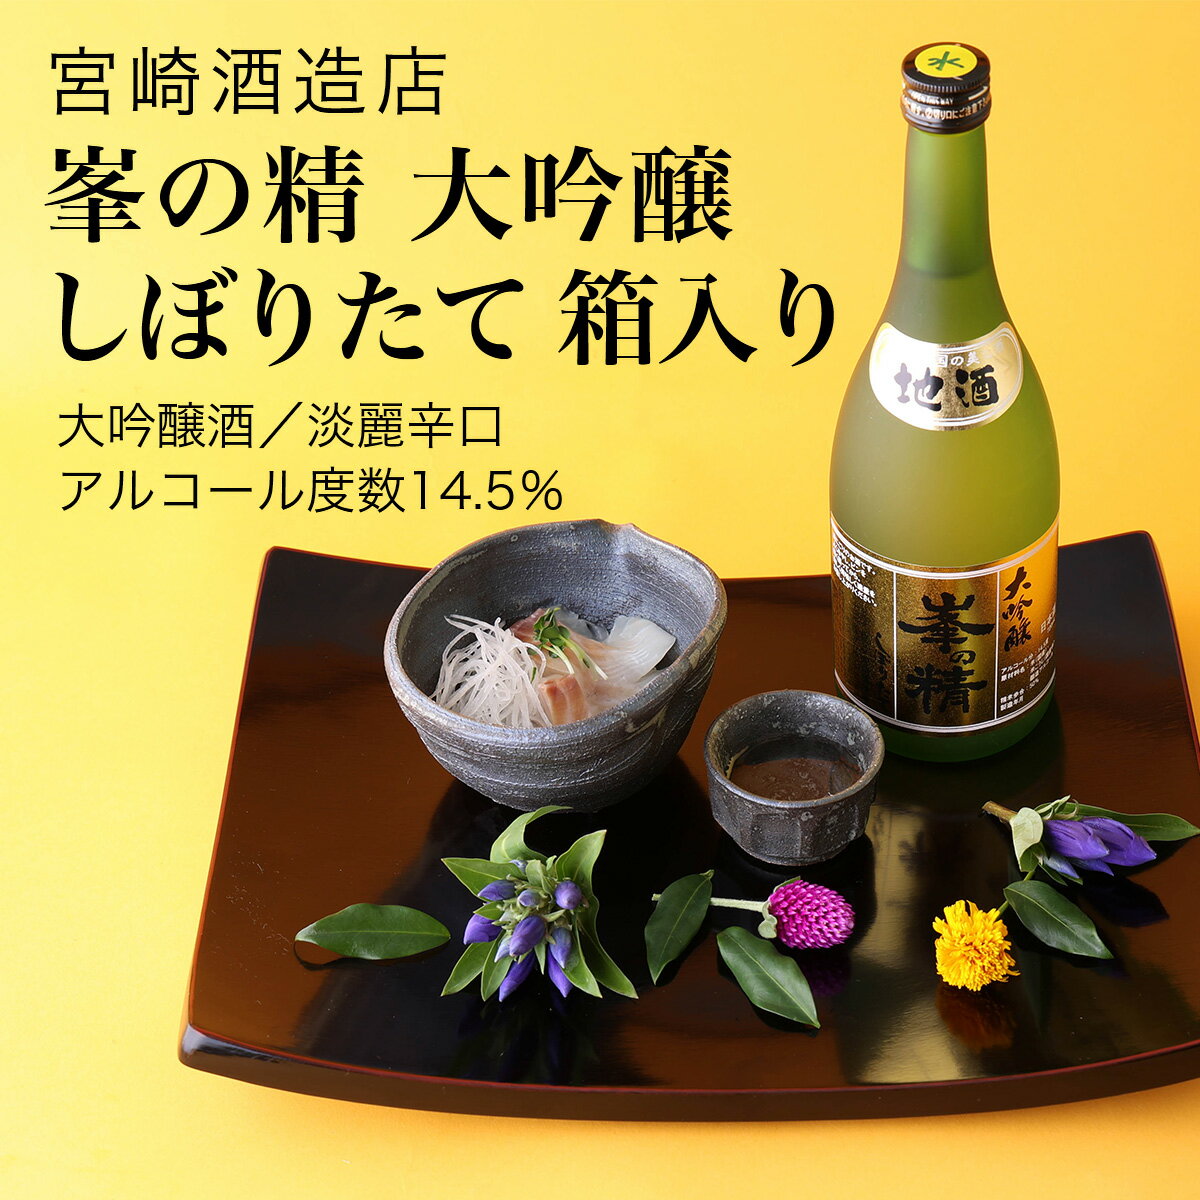 【日本酒】峯の精 大吟醸しぼりたて 箱入り大吟醸...の商品画像